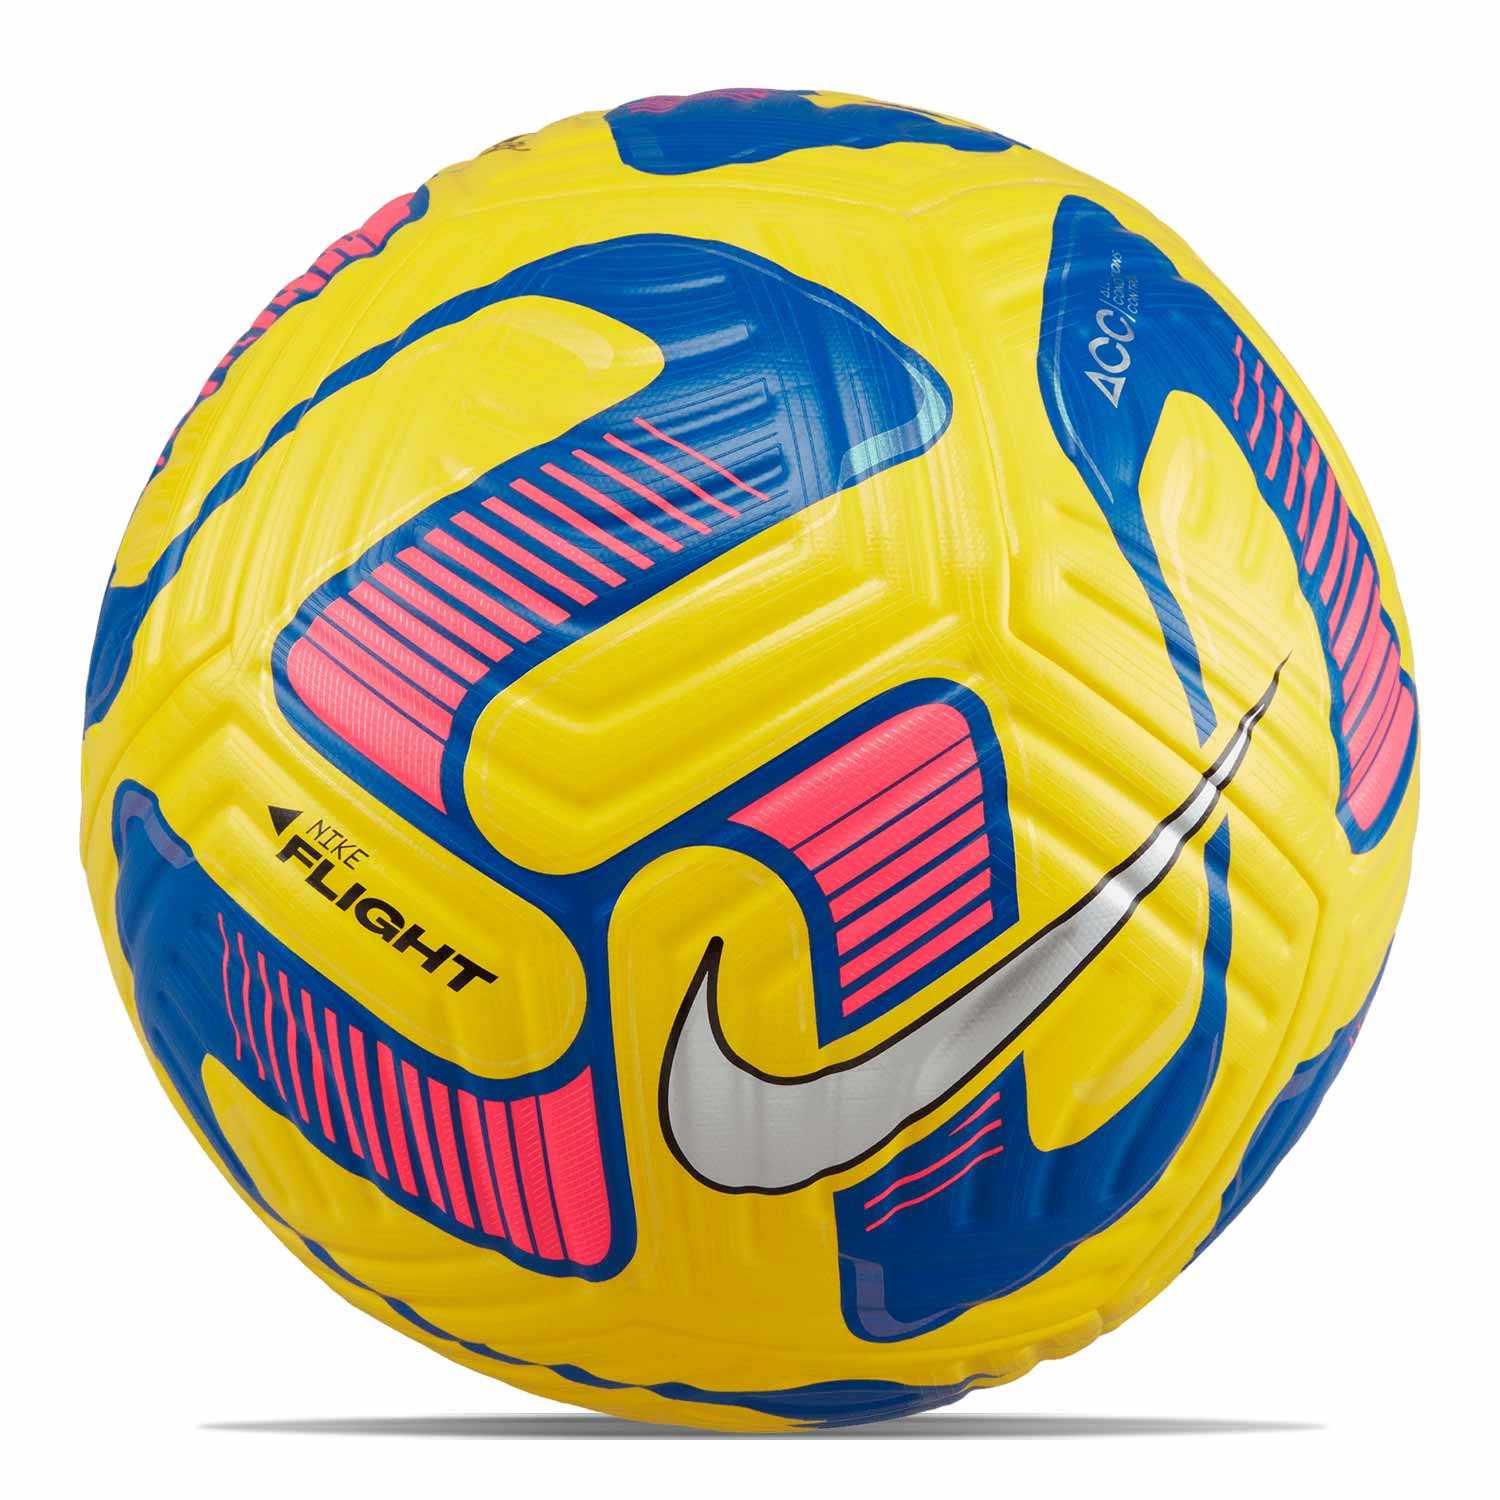 Contrapartida Óxido Humilde Balón Nike Flight talla 5 amarillo | futbolmania